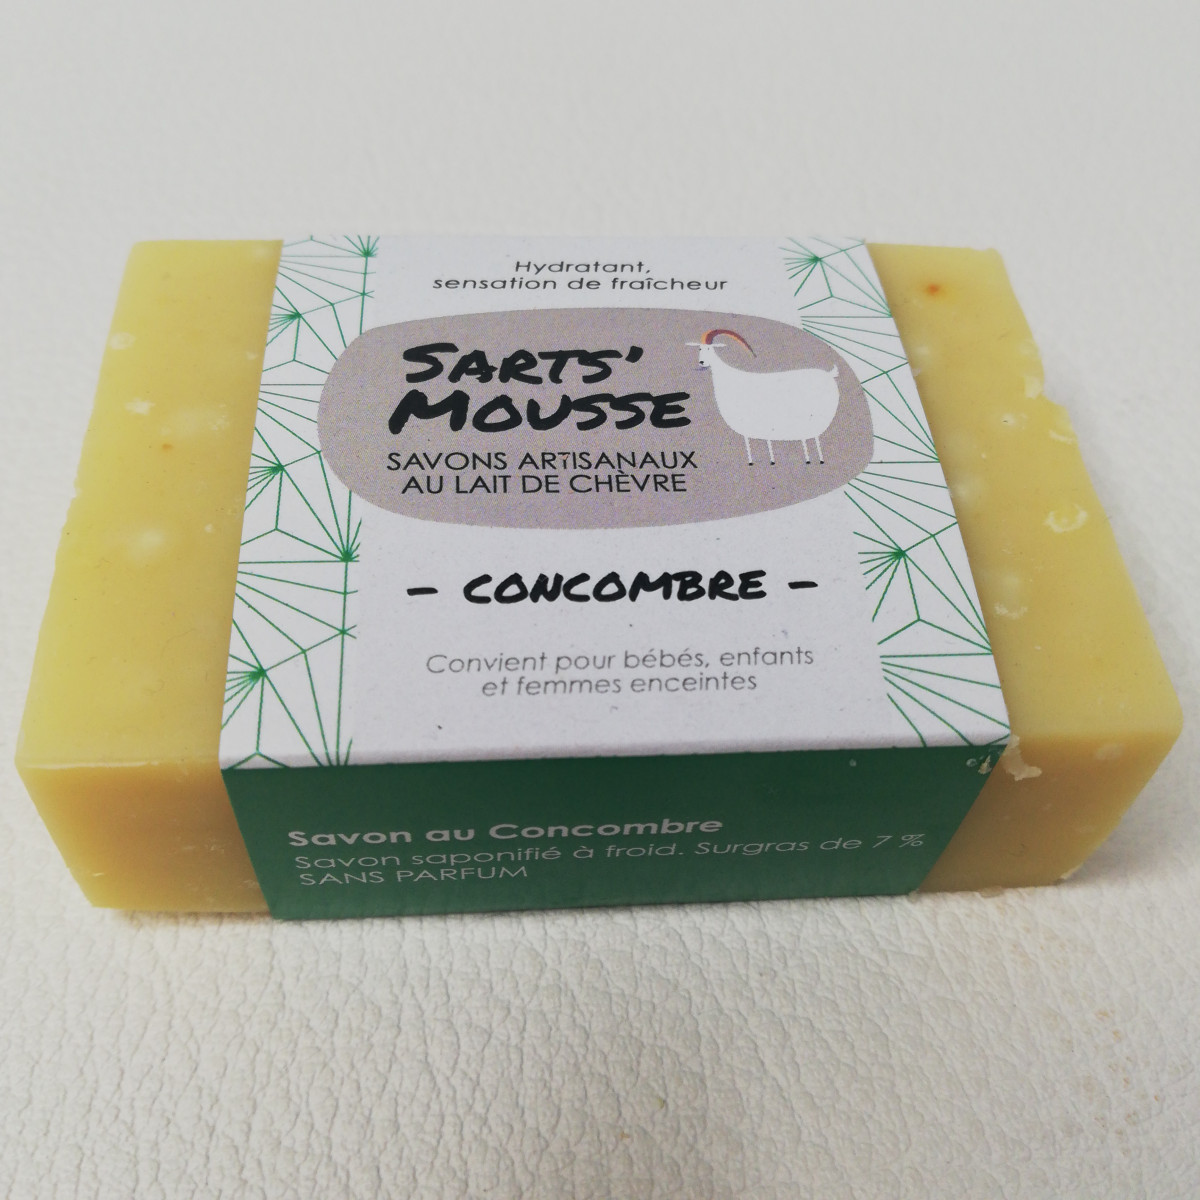 Savon Sart's mousse - Concombre - Boutique Toup'tibou - photo 6